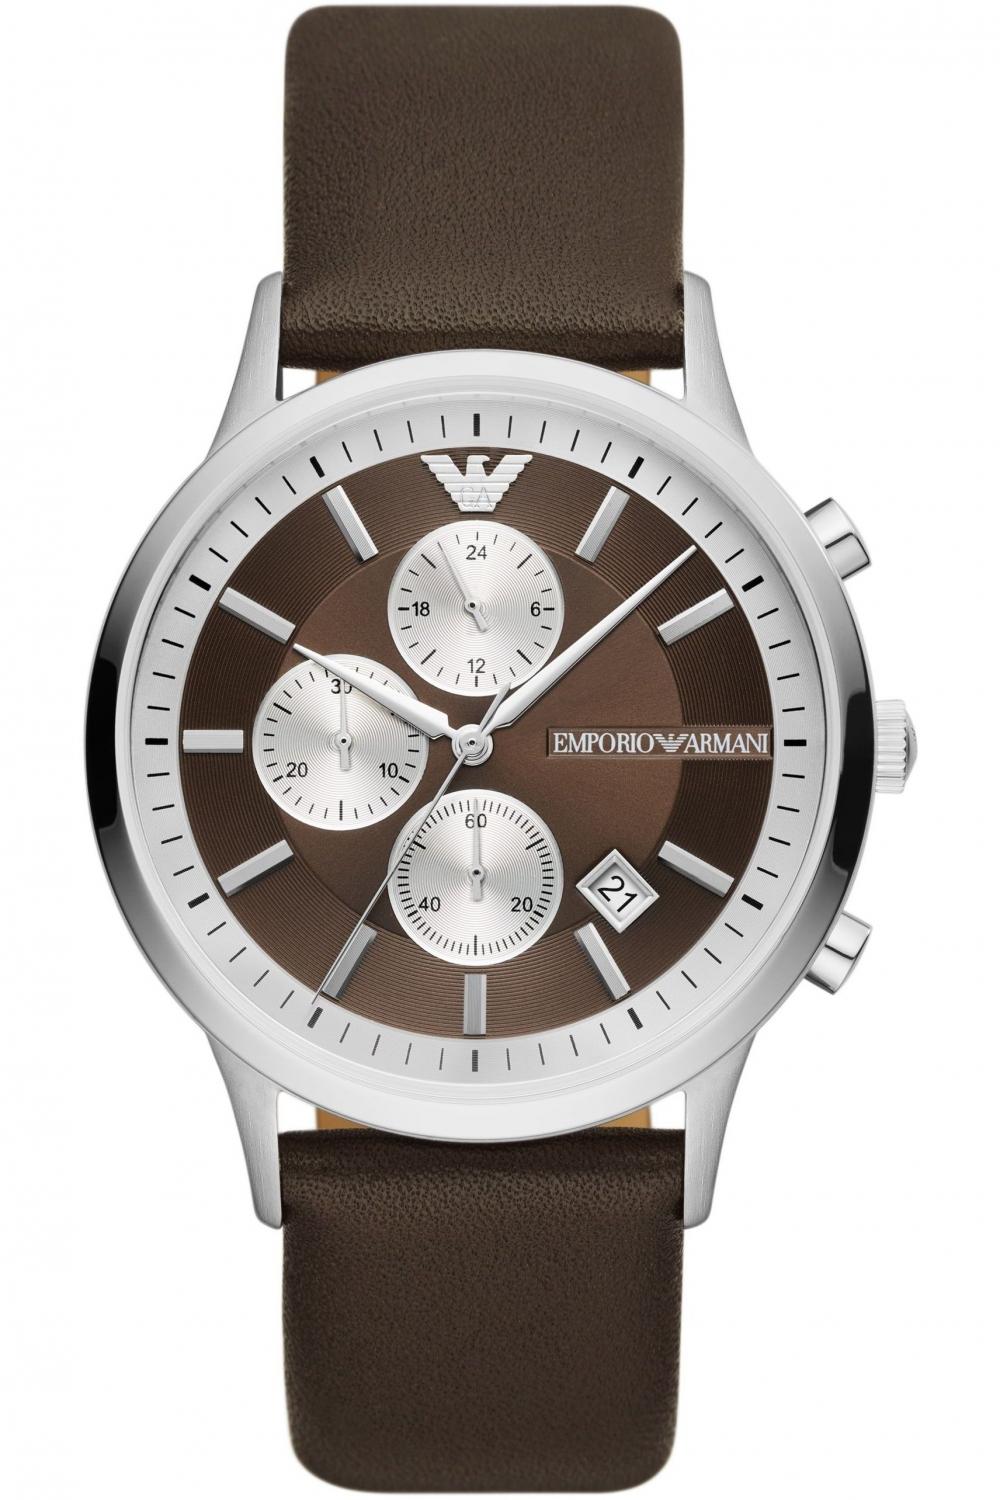 emporio armani renato chronograph ar11490 silver case with brown leather strap image1